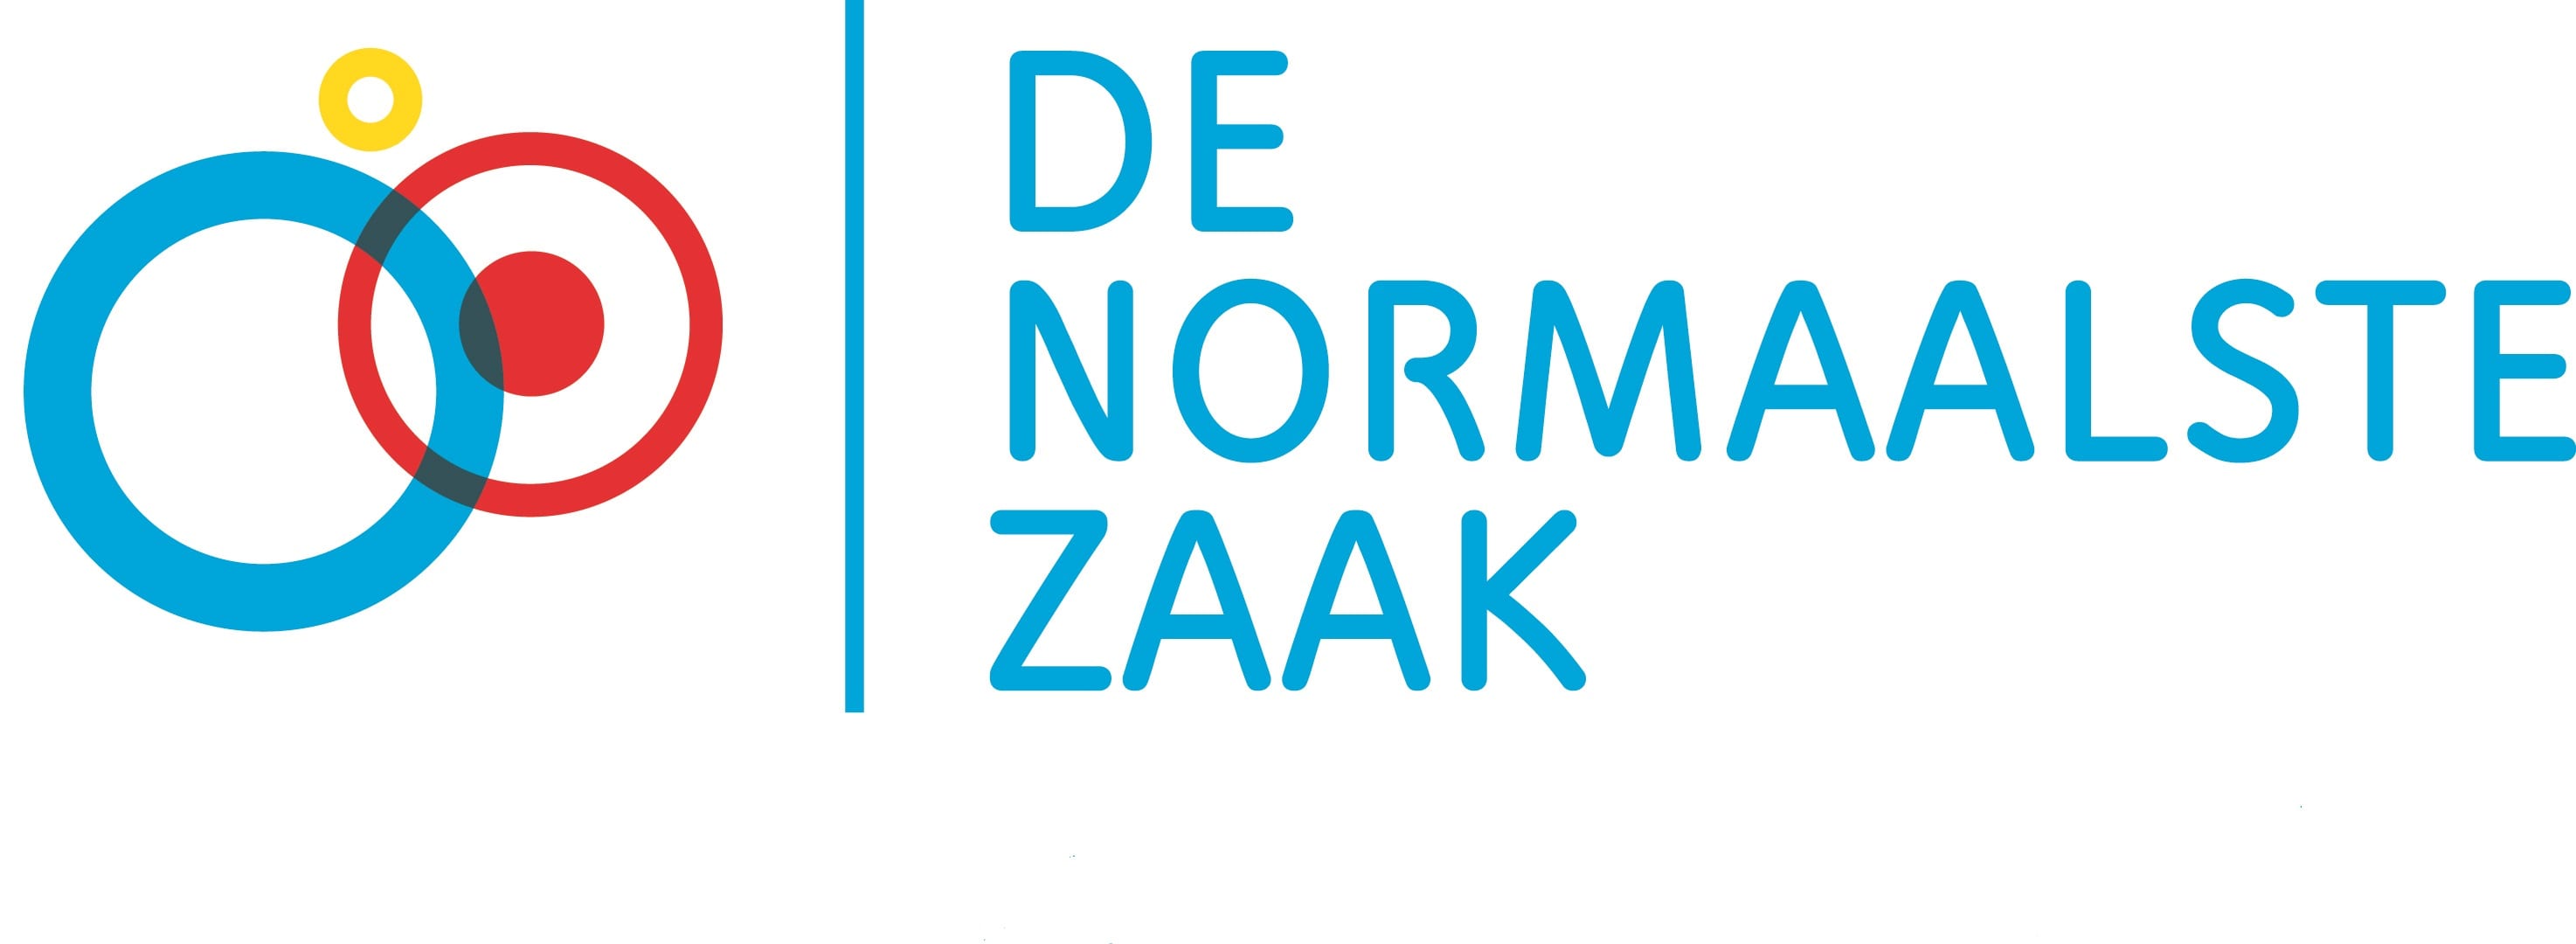 De Normaalste Zaak logo